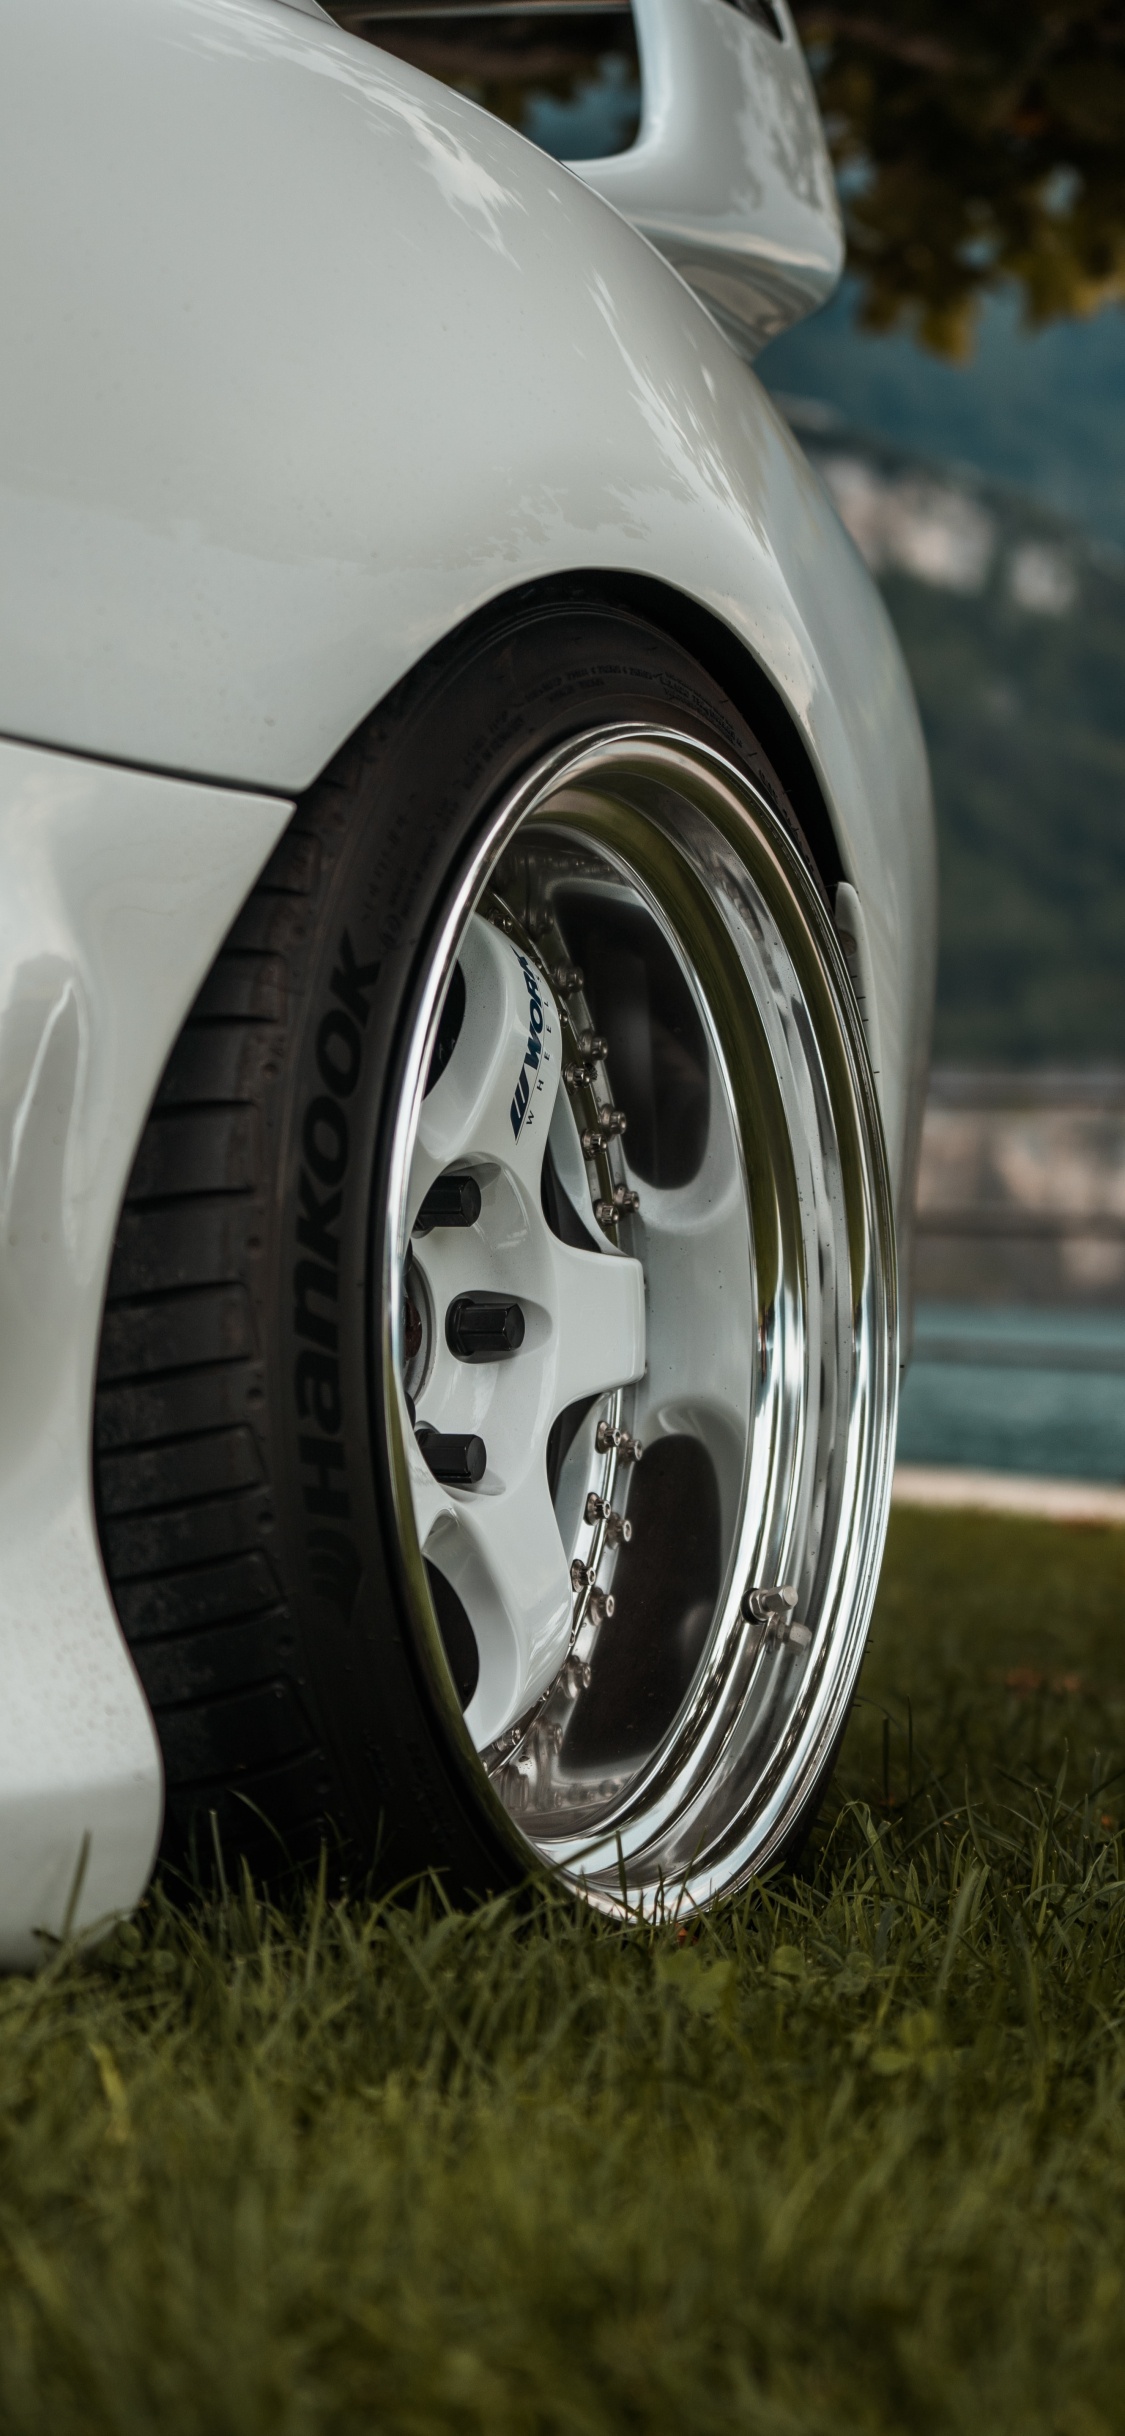 Rim, 轮胎, 铝合金轮毂, 汽车轮胎, 自动的一部分 壁纸 1125x2436 允许